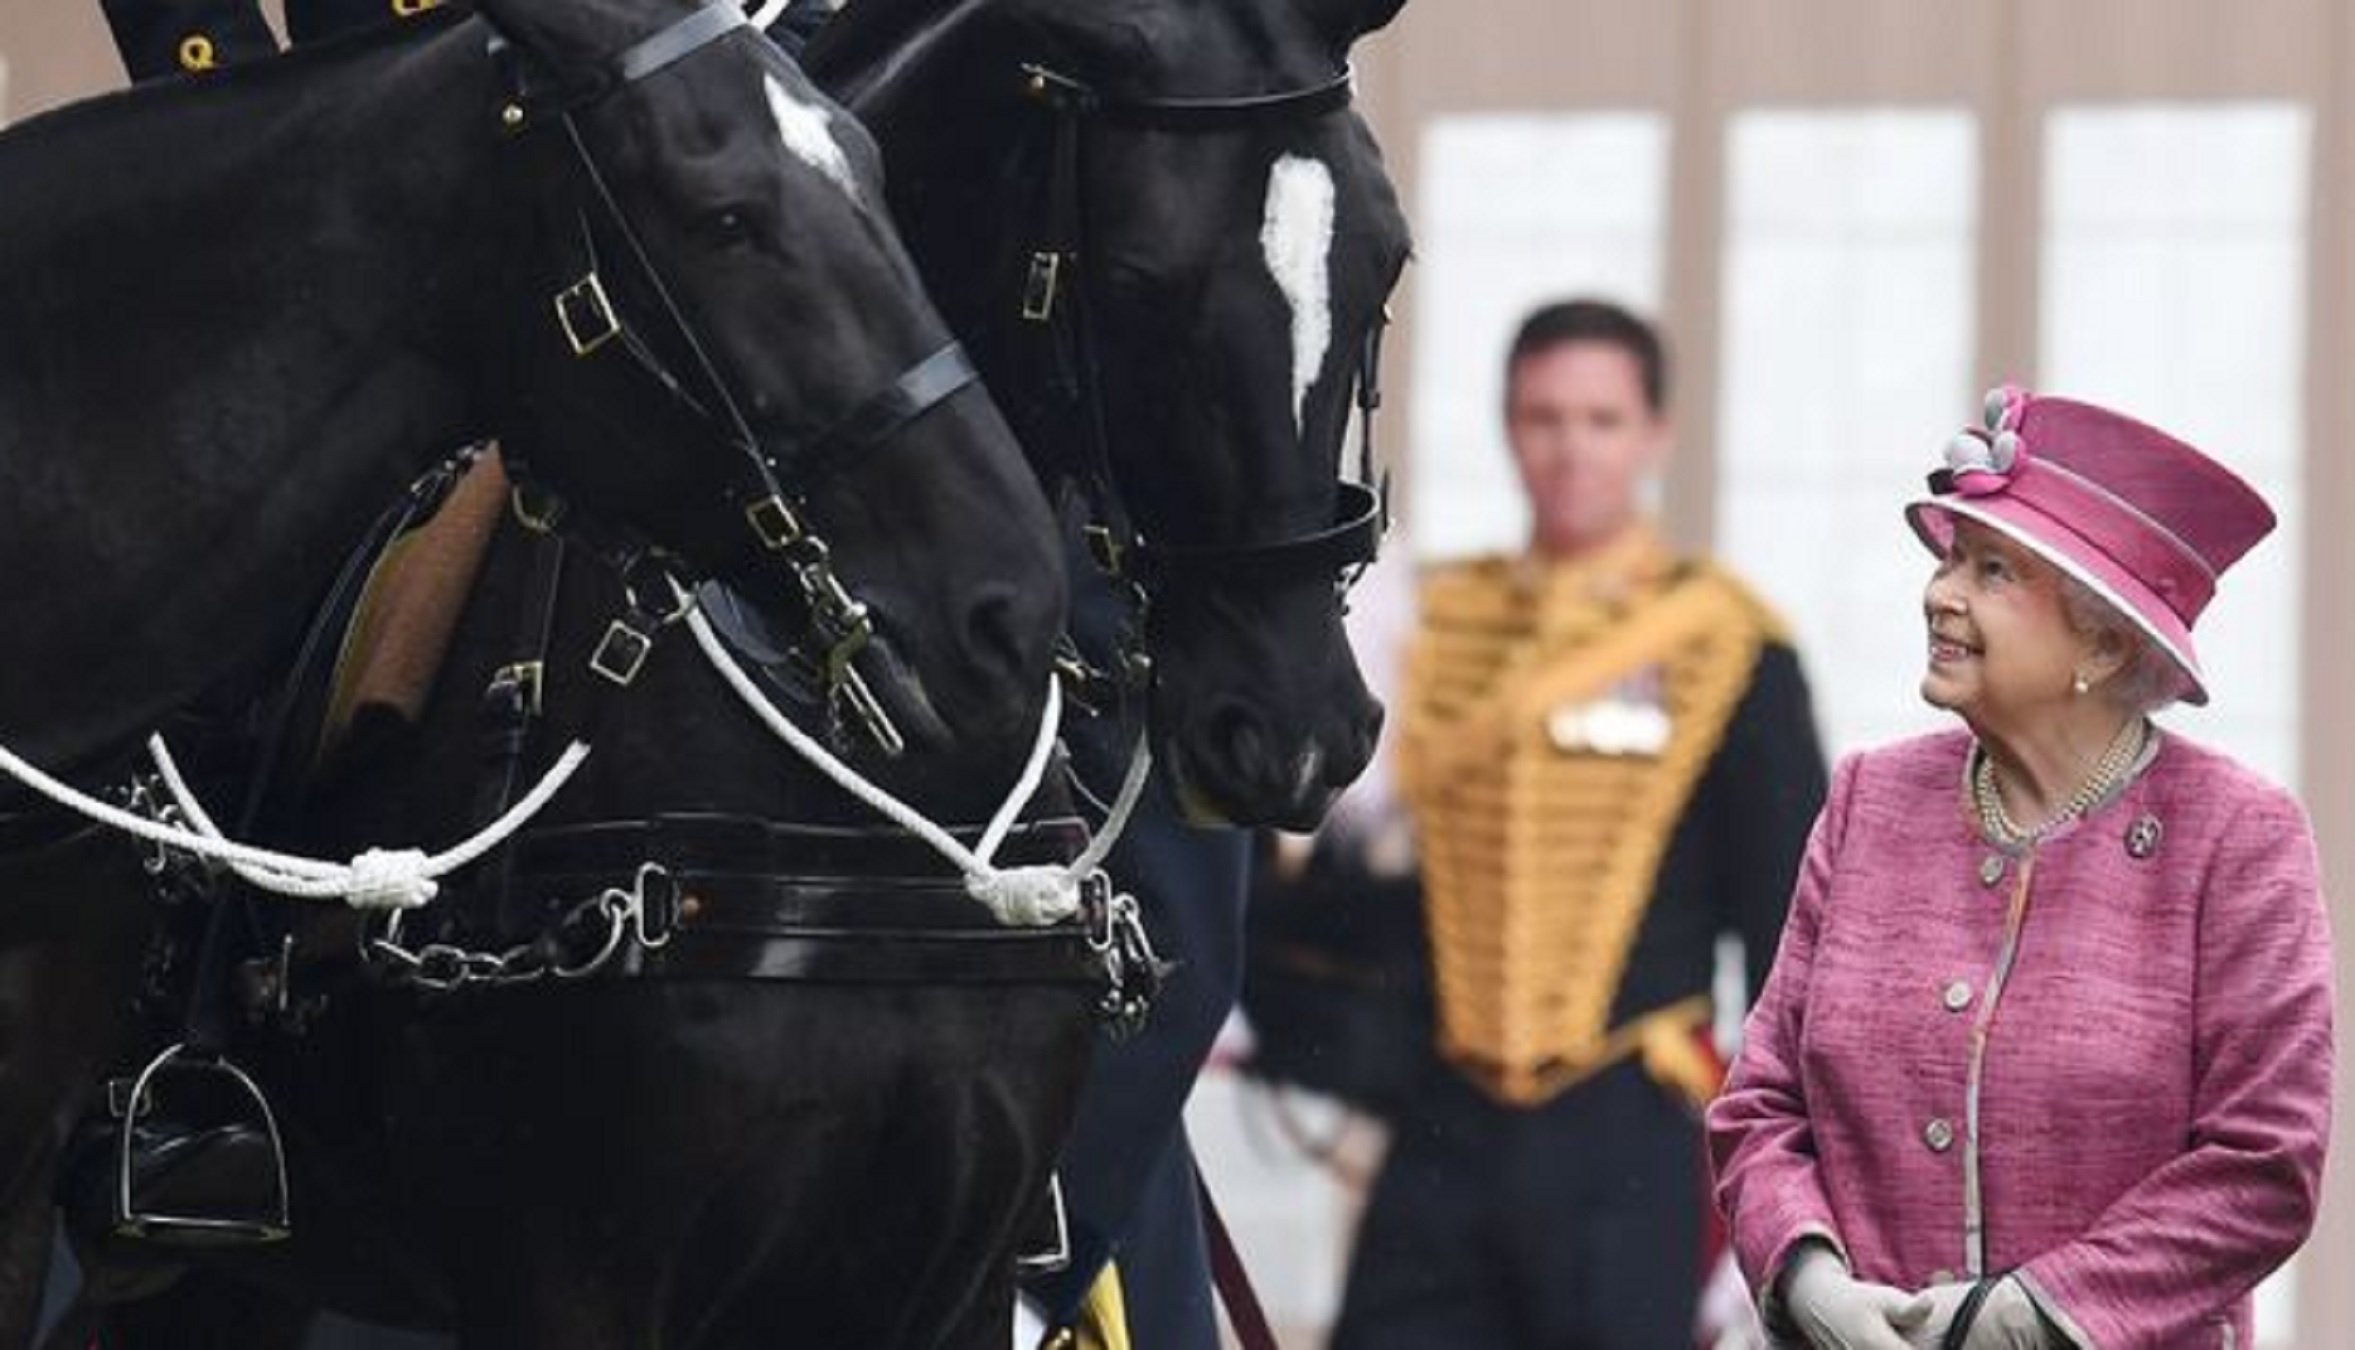 Carles III traeix Elisabet II i ven 14 cavalls a un anònim per una suma ingent de diners